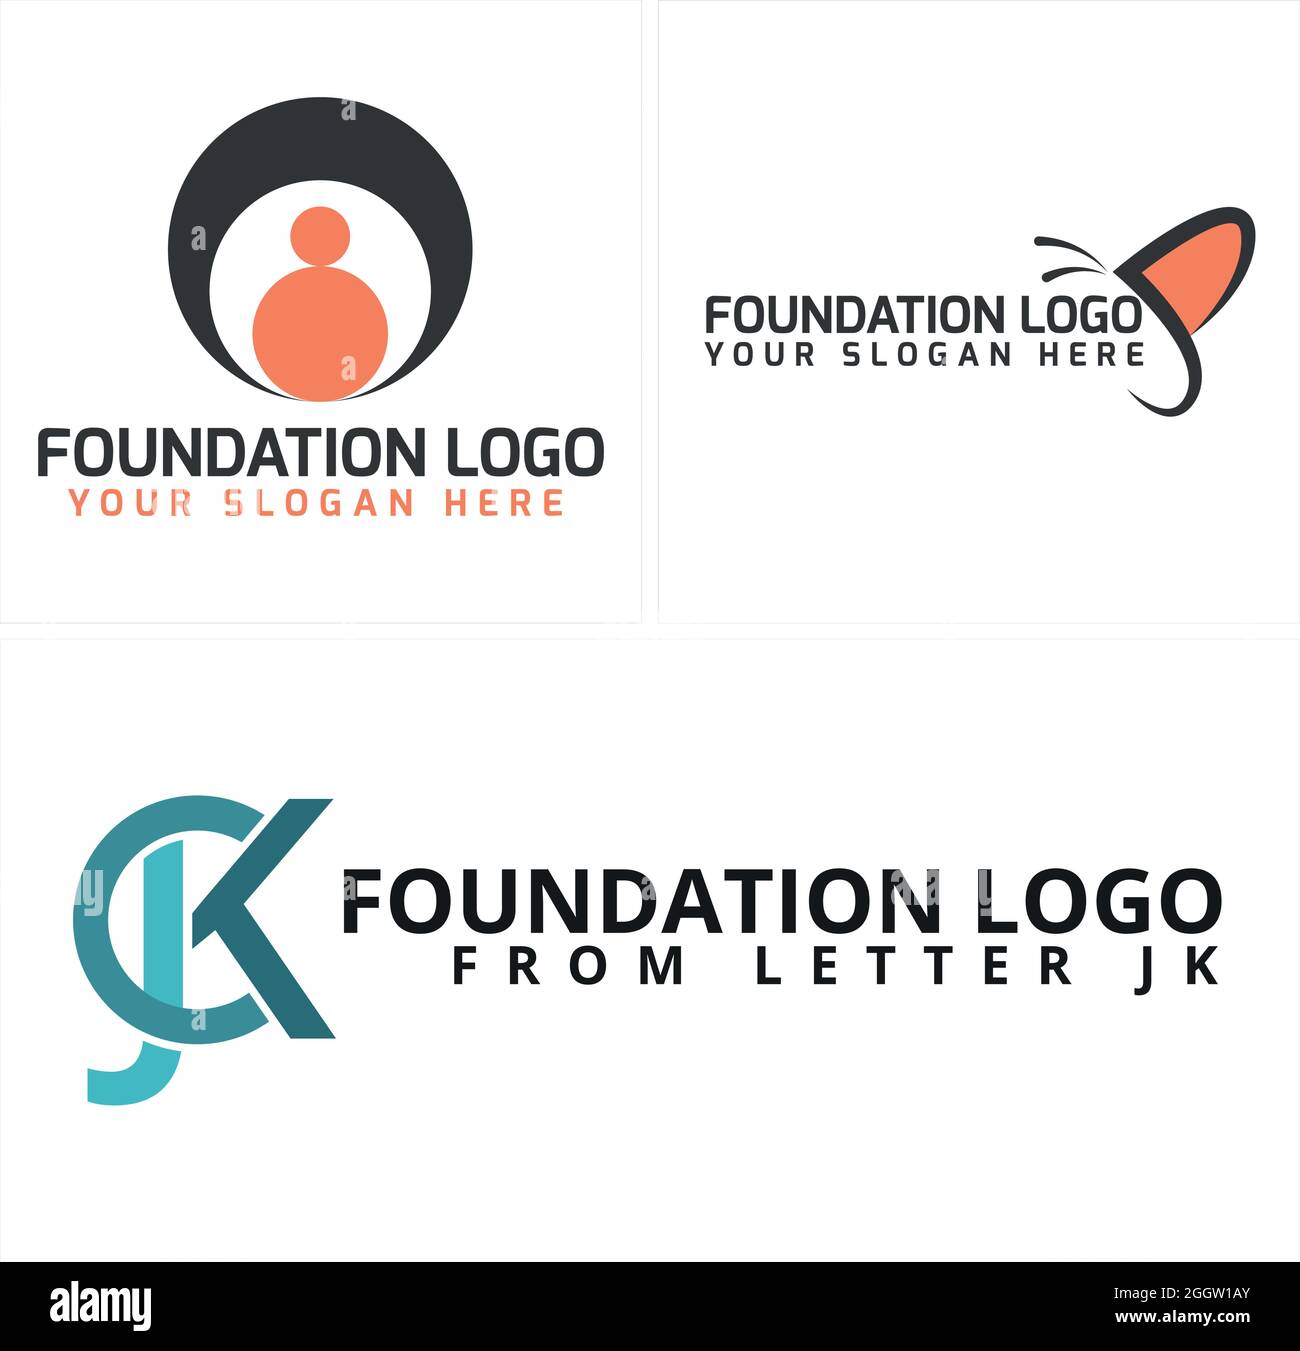 Organisme de bienfaisance communautaire à but non lucratif avec des personnes d'icône et un logo de papillon Illustration de Vecteur